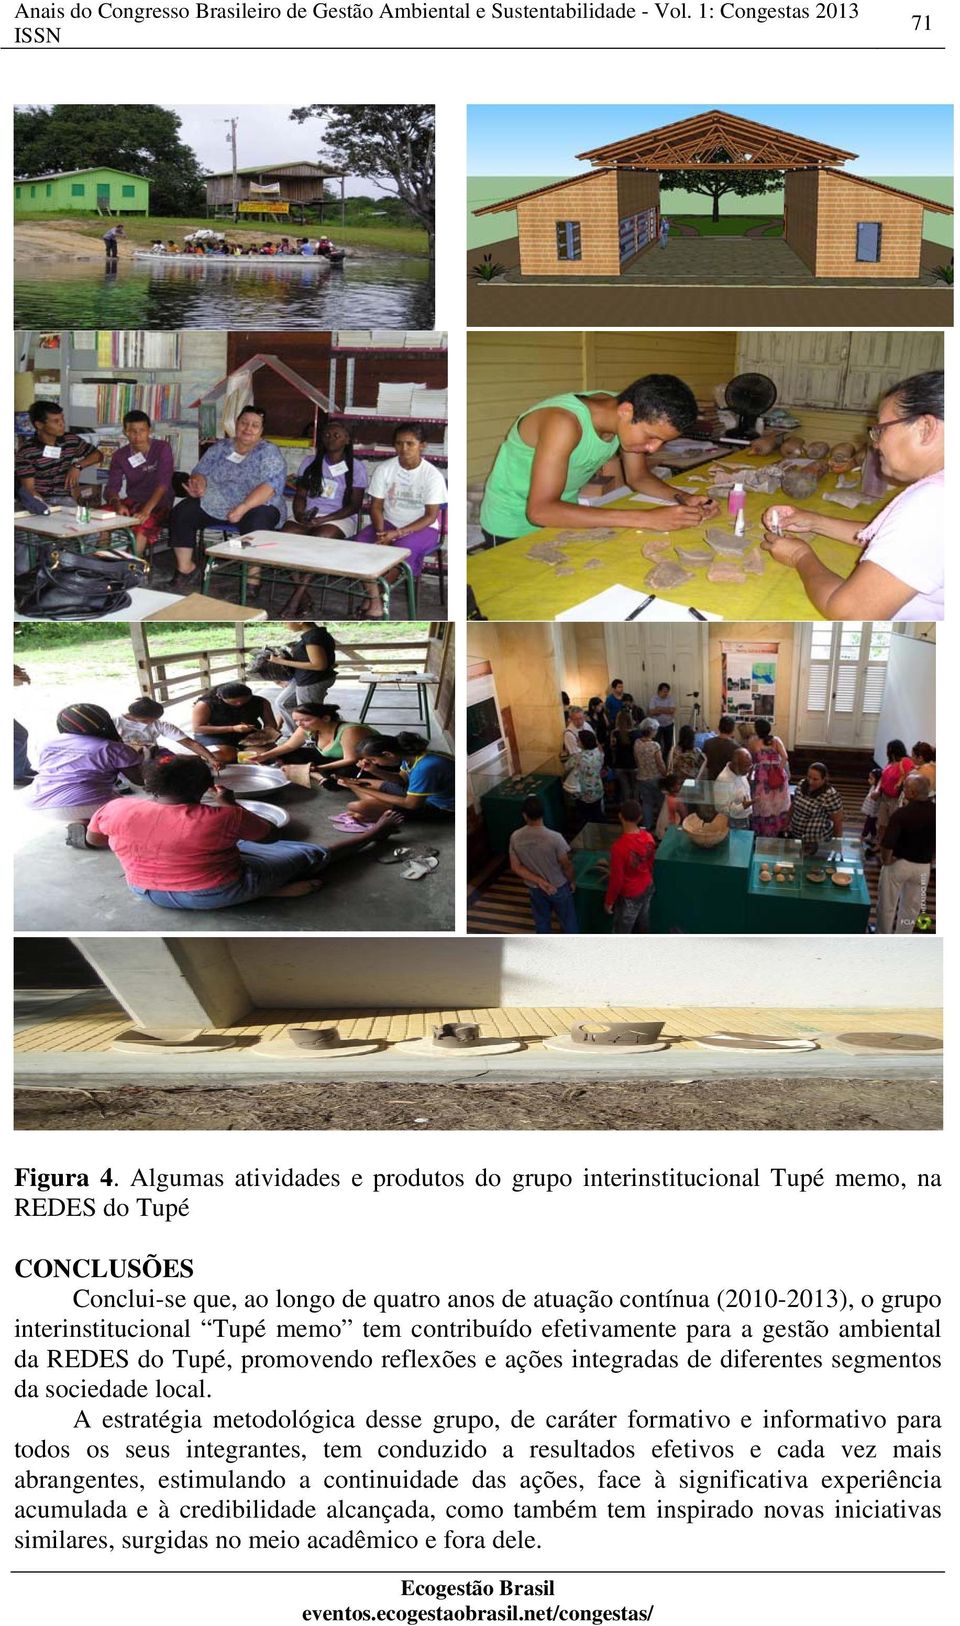 interinstitucional Tupé memo tem contribuído efetivamente para a gestão ambiental da REDES do Tupé, promovendo reflexões e ações integradas de diferentes segmentos da sociedade local.